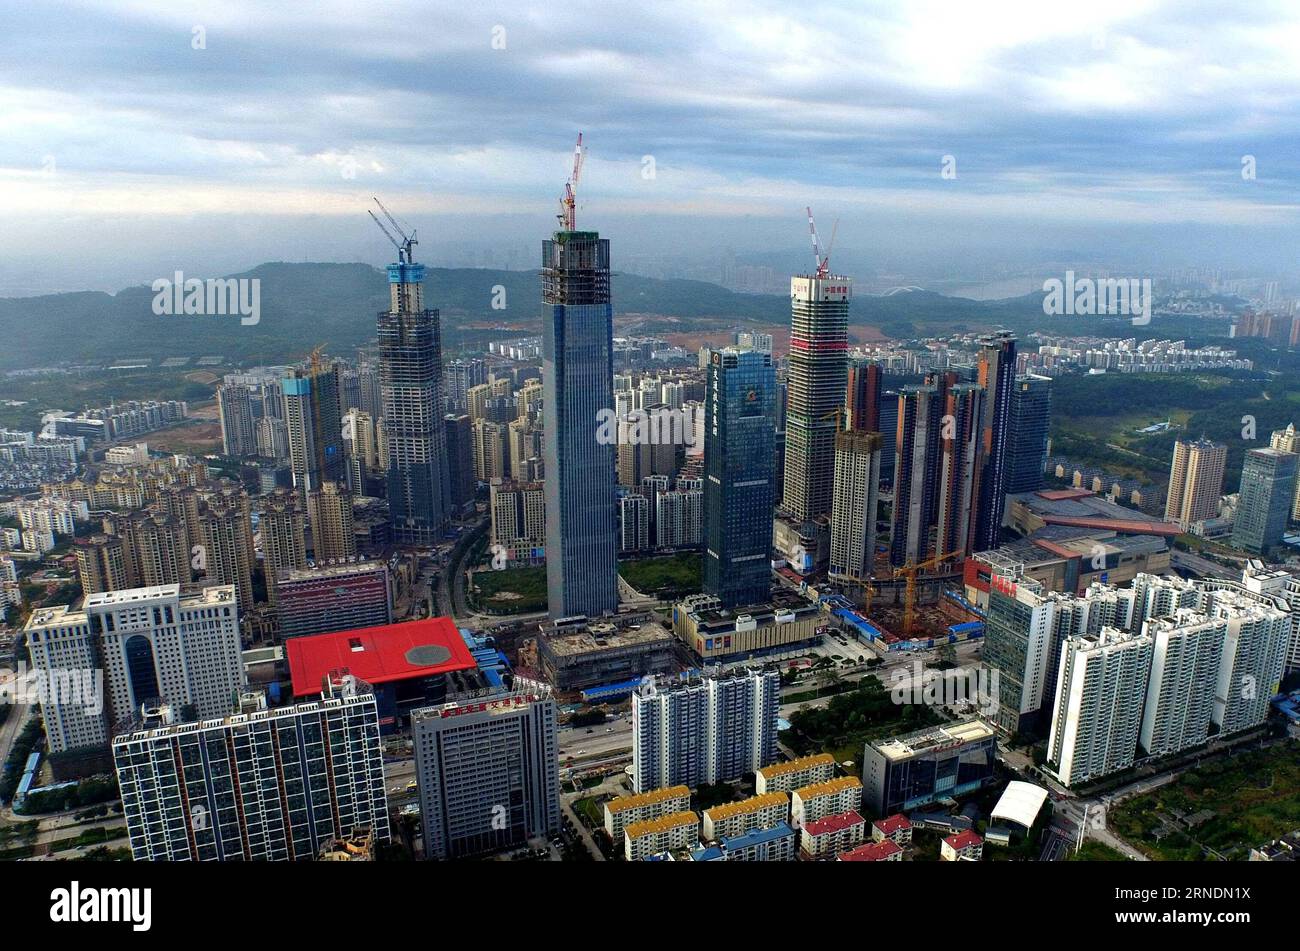 NANNING, -- Foto aufgenommen am 21. November 2015 zeigt Gebäude, die im Bezirk Langdong von Nanning, der Hauptstadt der südchinesischen autonomen Region Guangxi Zhuang, im Bau sind. Die 2006 gegründete Beibu Gulf Economic Zone umfasst sechs Städte: Nanning, Beihai, Qinzhou, Fangchenggang, Yulin und Chongzuo. Nach zehn Jahren Entwicklung ist der Gesamtproduktionswert von Nanning, Beihai, Qinzhou und Fangchenggang 2015 auf 586,7 Milliarden Yuan (etwa 89,47 Milliarden US-Dollar) gestiegen, und der Gesamtwert für Import und Export ist auf 24,1 Milliarden US-Dollar gestiegen. ) (ZWX) CHINA-GUANGXI-BEIBU GULF ECONOMIC Stockfoto